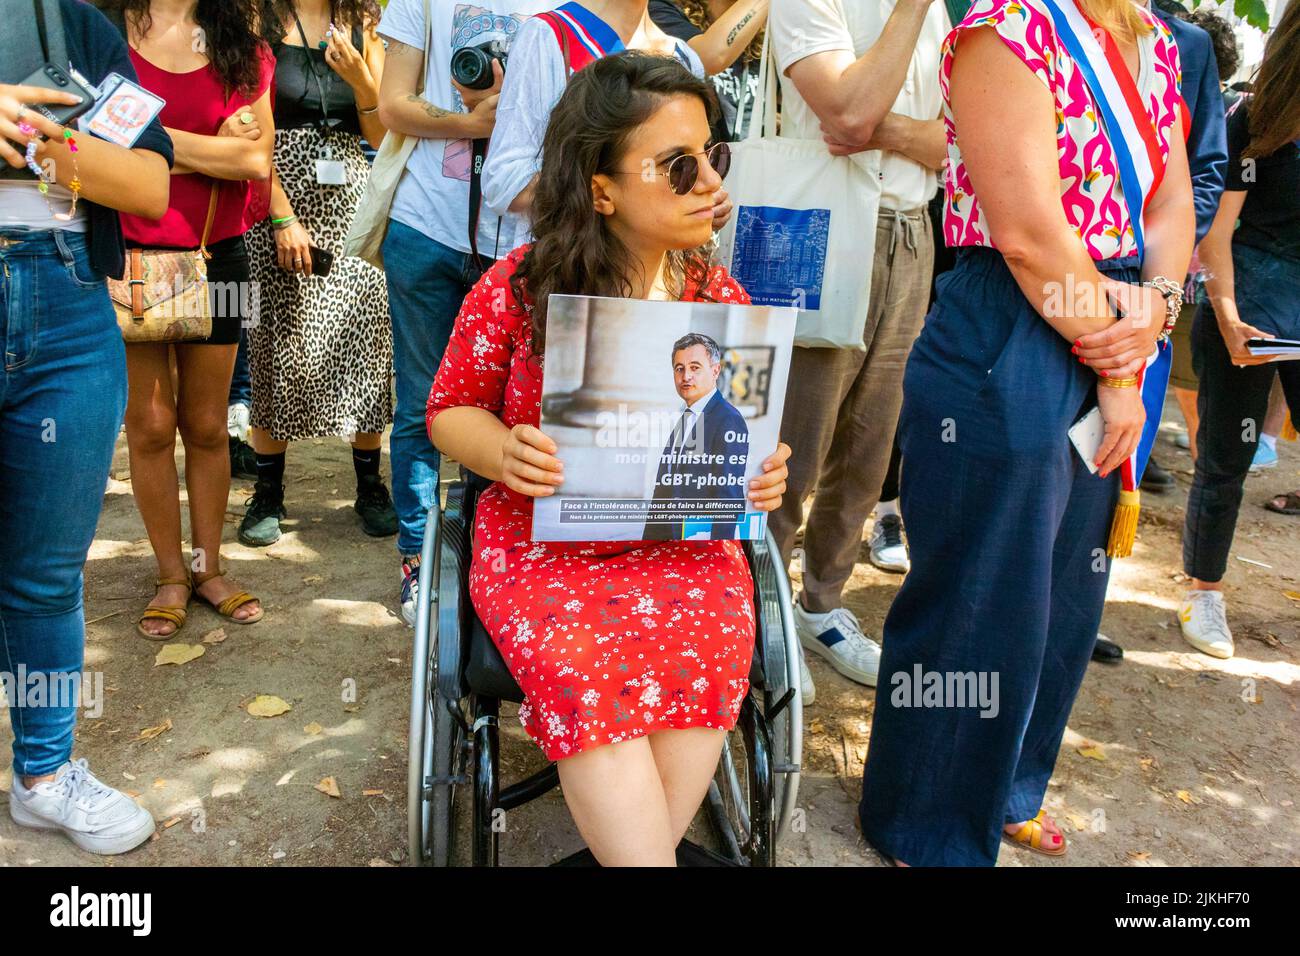 París, Francia, Mujer con Protesta Sign in Wheelchair in Crowd, Partido Político Francés EELV (NUPES, y N.G.O's: Act Up Paris, Aides, STRASS,), Demostración contra la homofobia, LGBT-Phobia, Los ministros en el gobierno de Macron, (Cayeux, Bechu, Le Cornu) para abandonar, Foto de stock